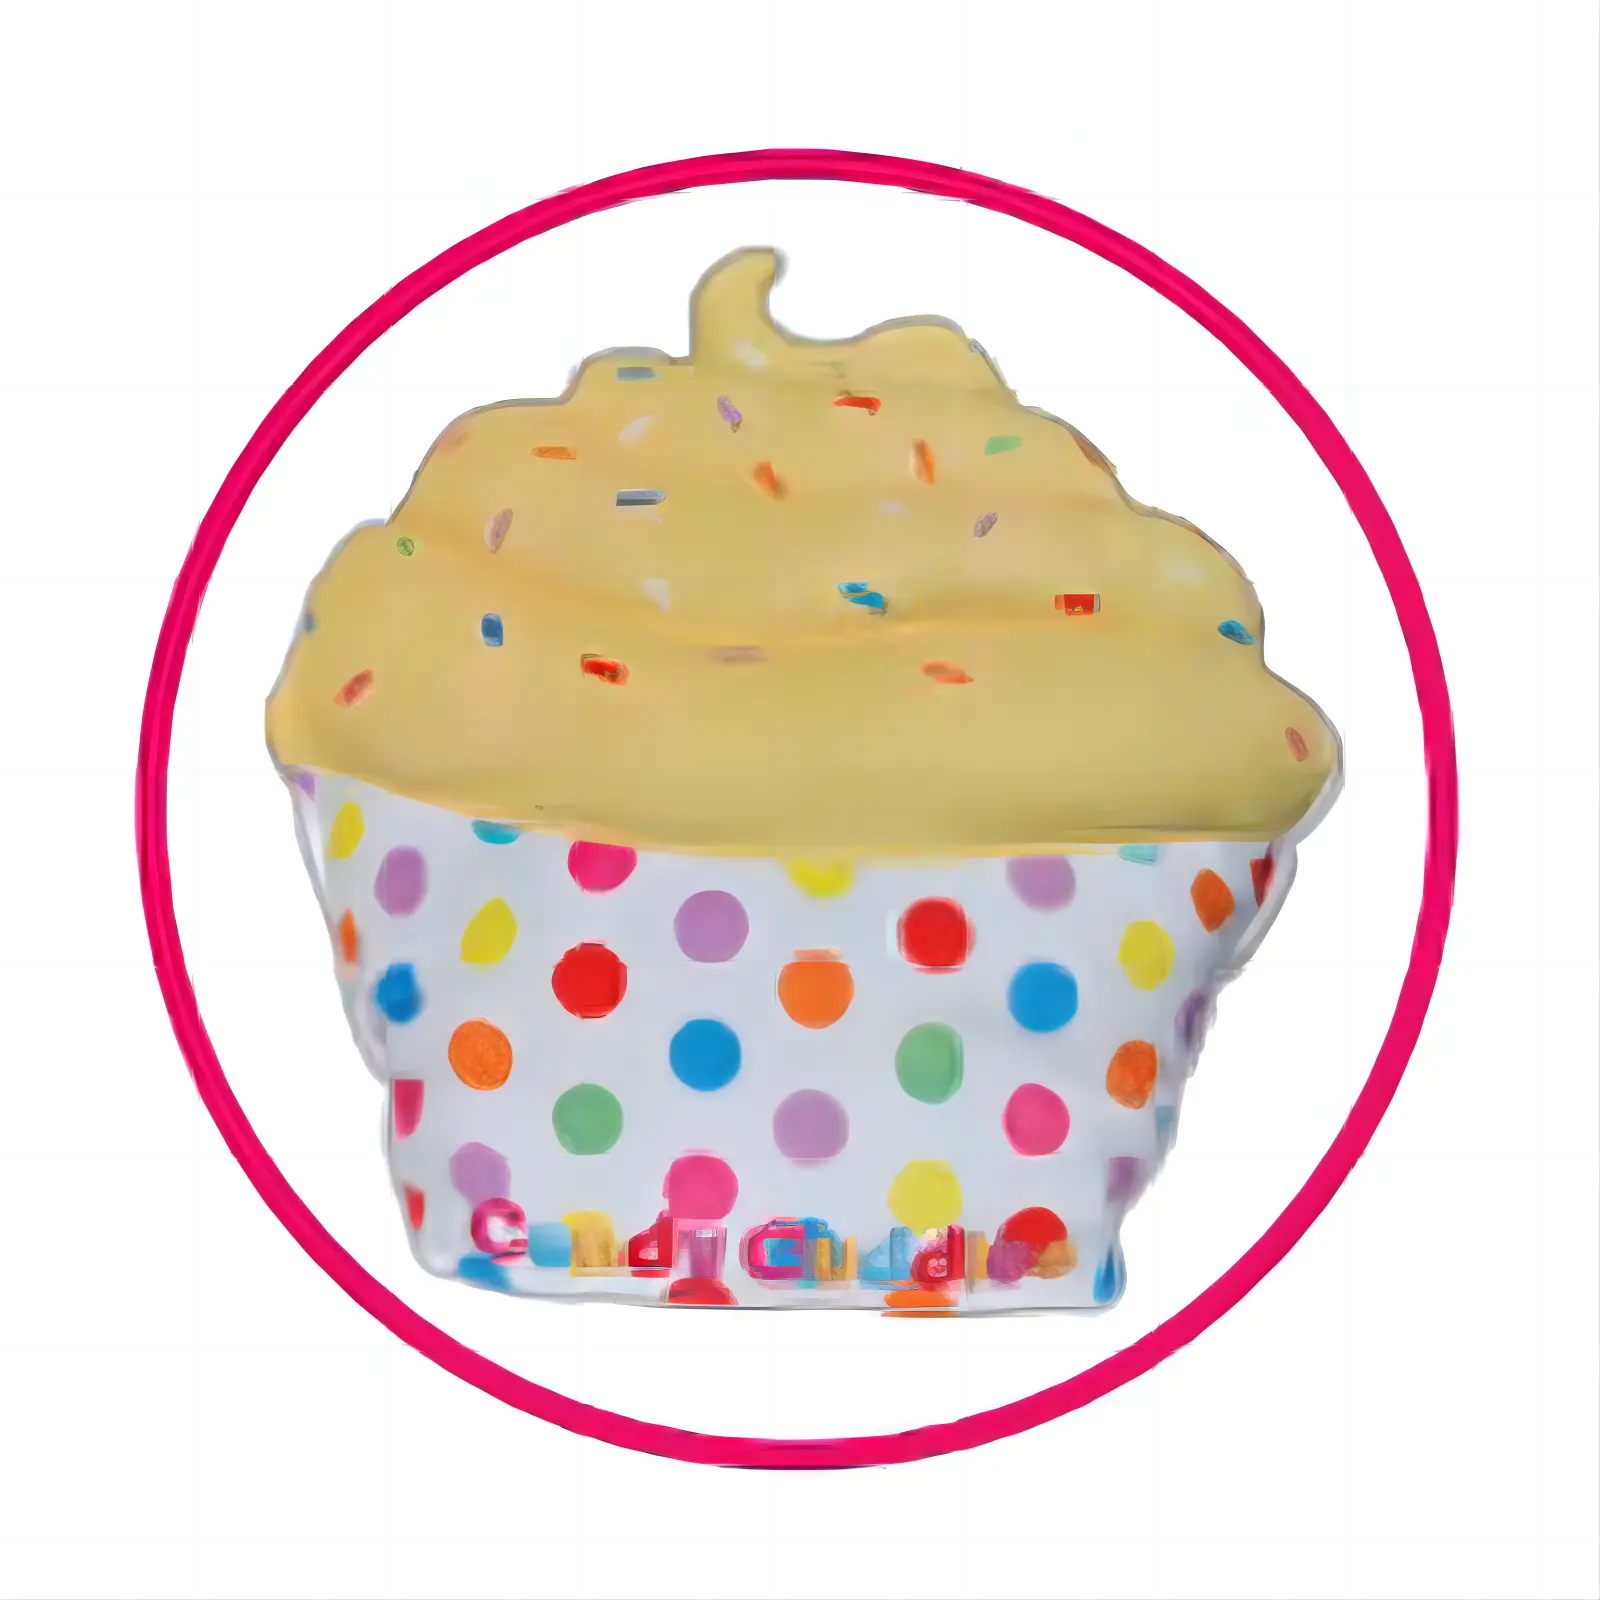 Pequeña cantidad de pedido Diseño de postre ligero Diy Artesanía Relleno Felpa Lindo Juguete 2D Cupcakes Almohada